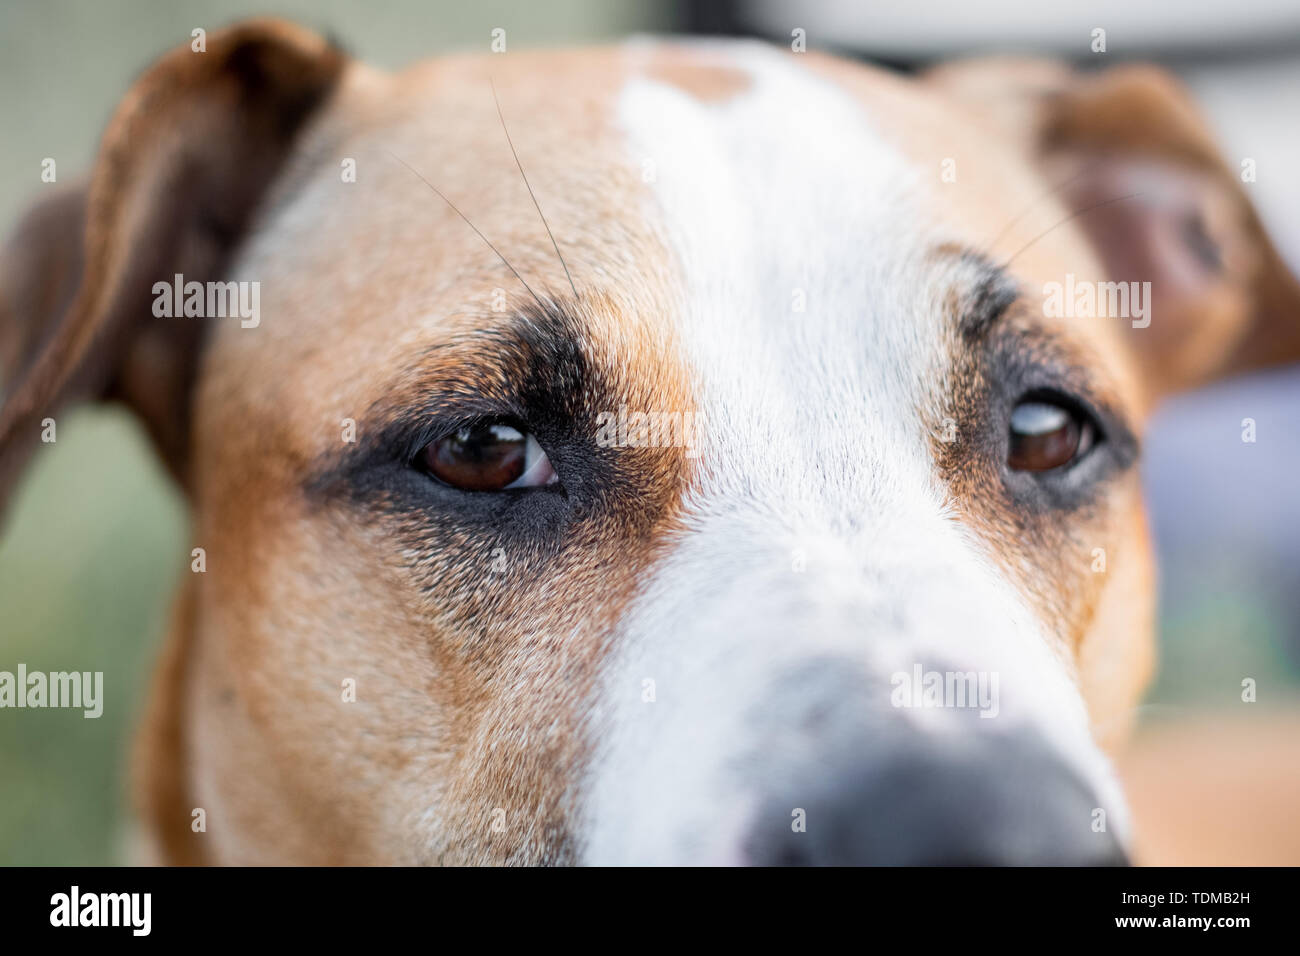 Close-up Portrait eines Hundes, konzentrierte sich auf die Augen. Makro-ansicht des Hundes Augen im Freien unter natürlichen Bedingungen, geringe Tiefenschärfe Stockfoto